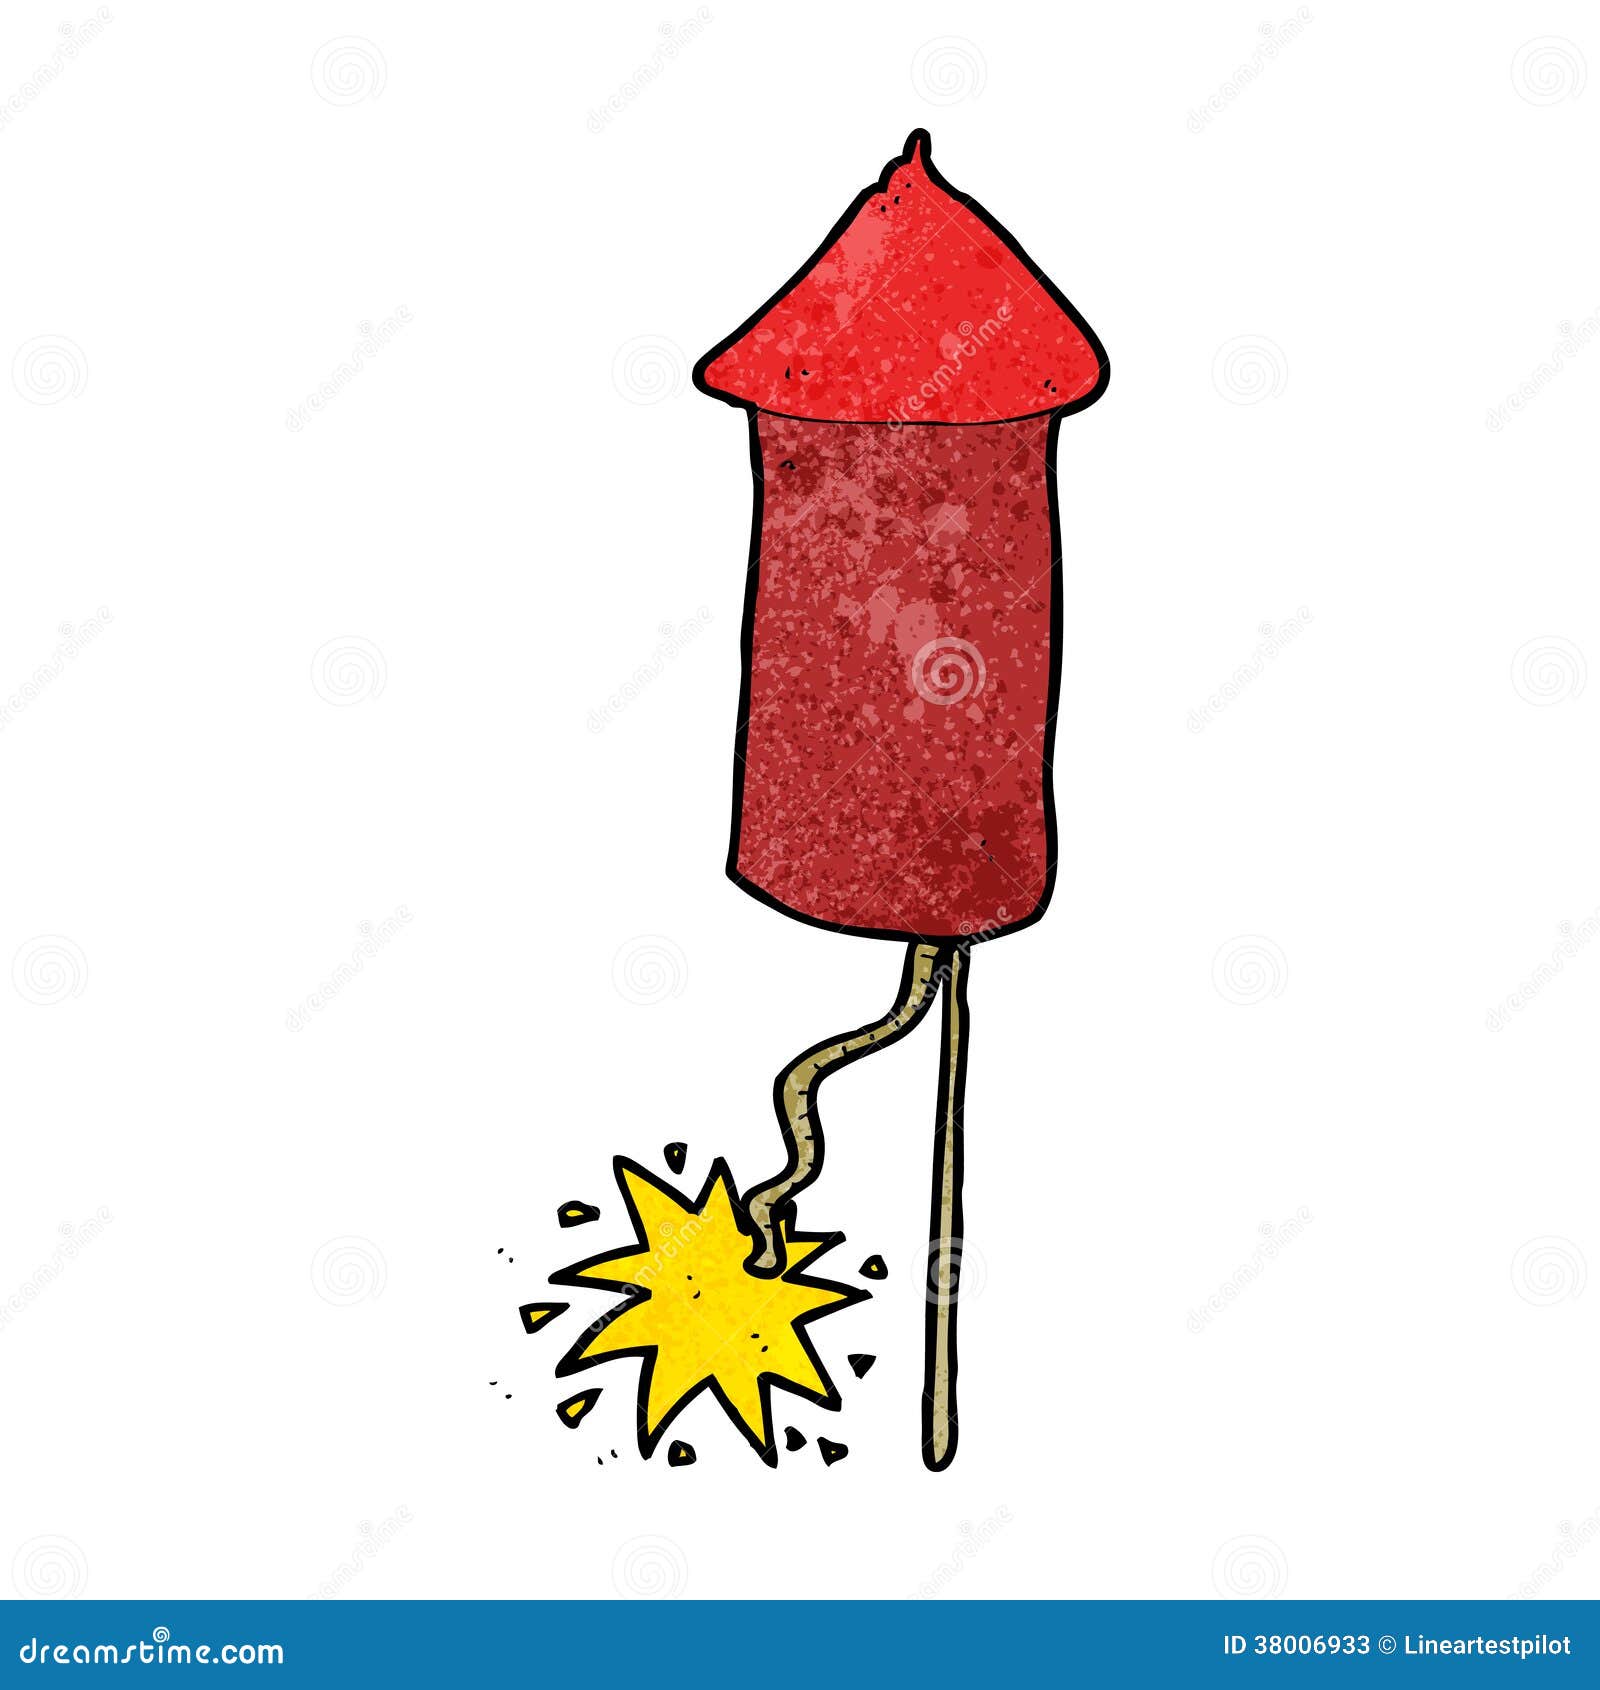 Cartoon firework stock vector. Illustration of rocket - 38006933